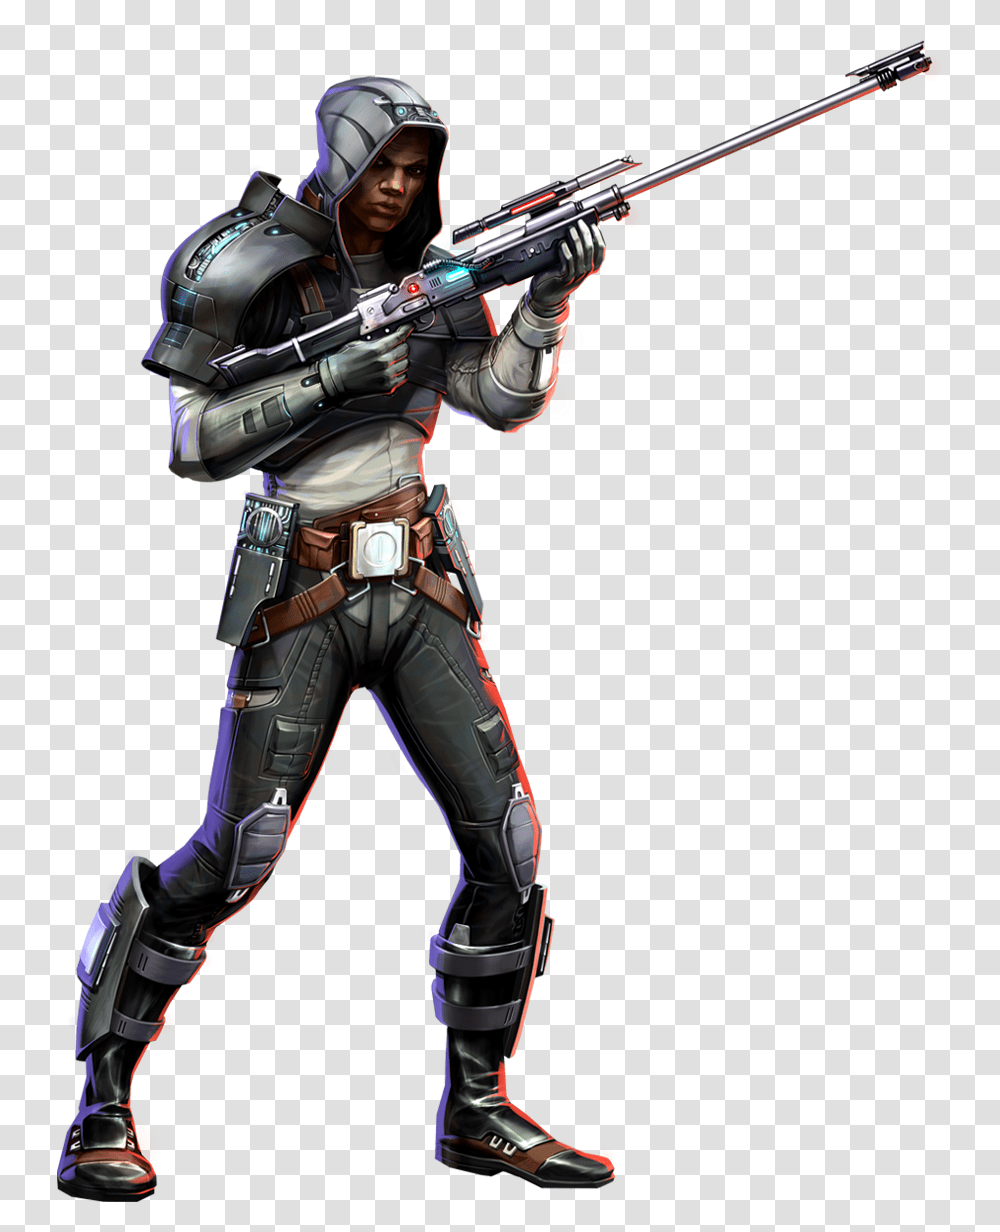 Assassin Swtor Imperial Agent, Helmet, Apparel, Gun Transparent Png